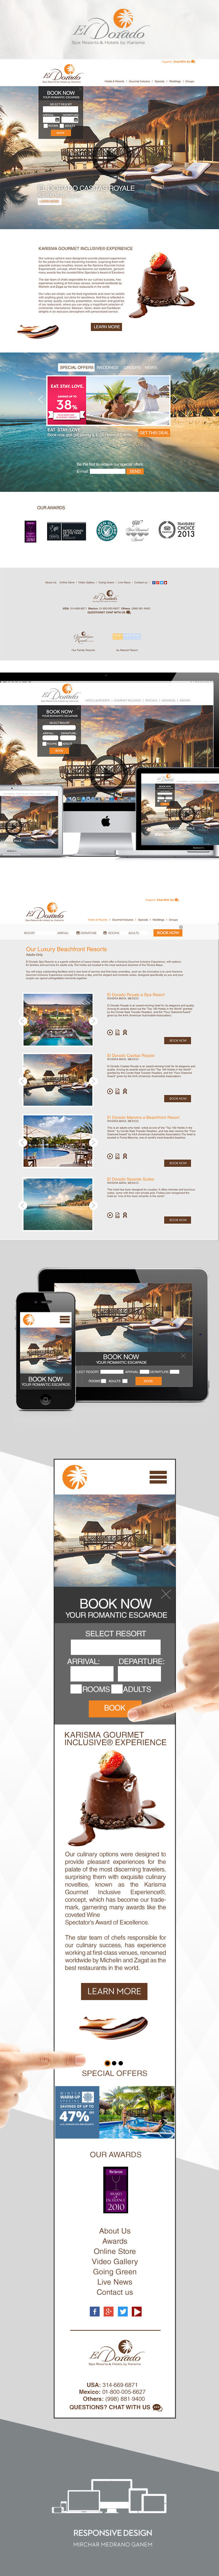 Sitio web El Dorado Spa Resorts & Hotels -1